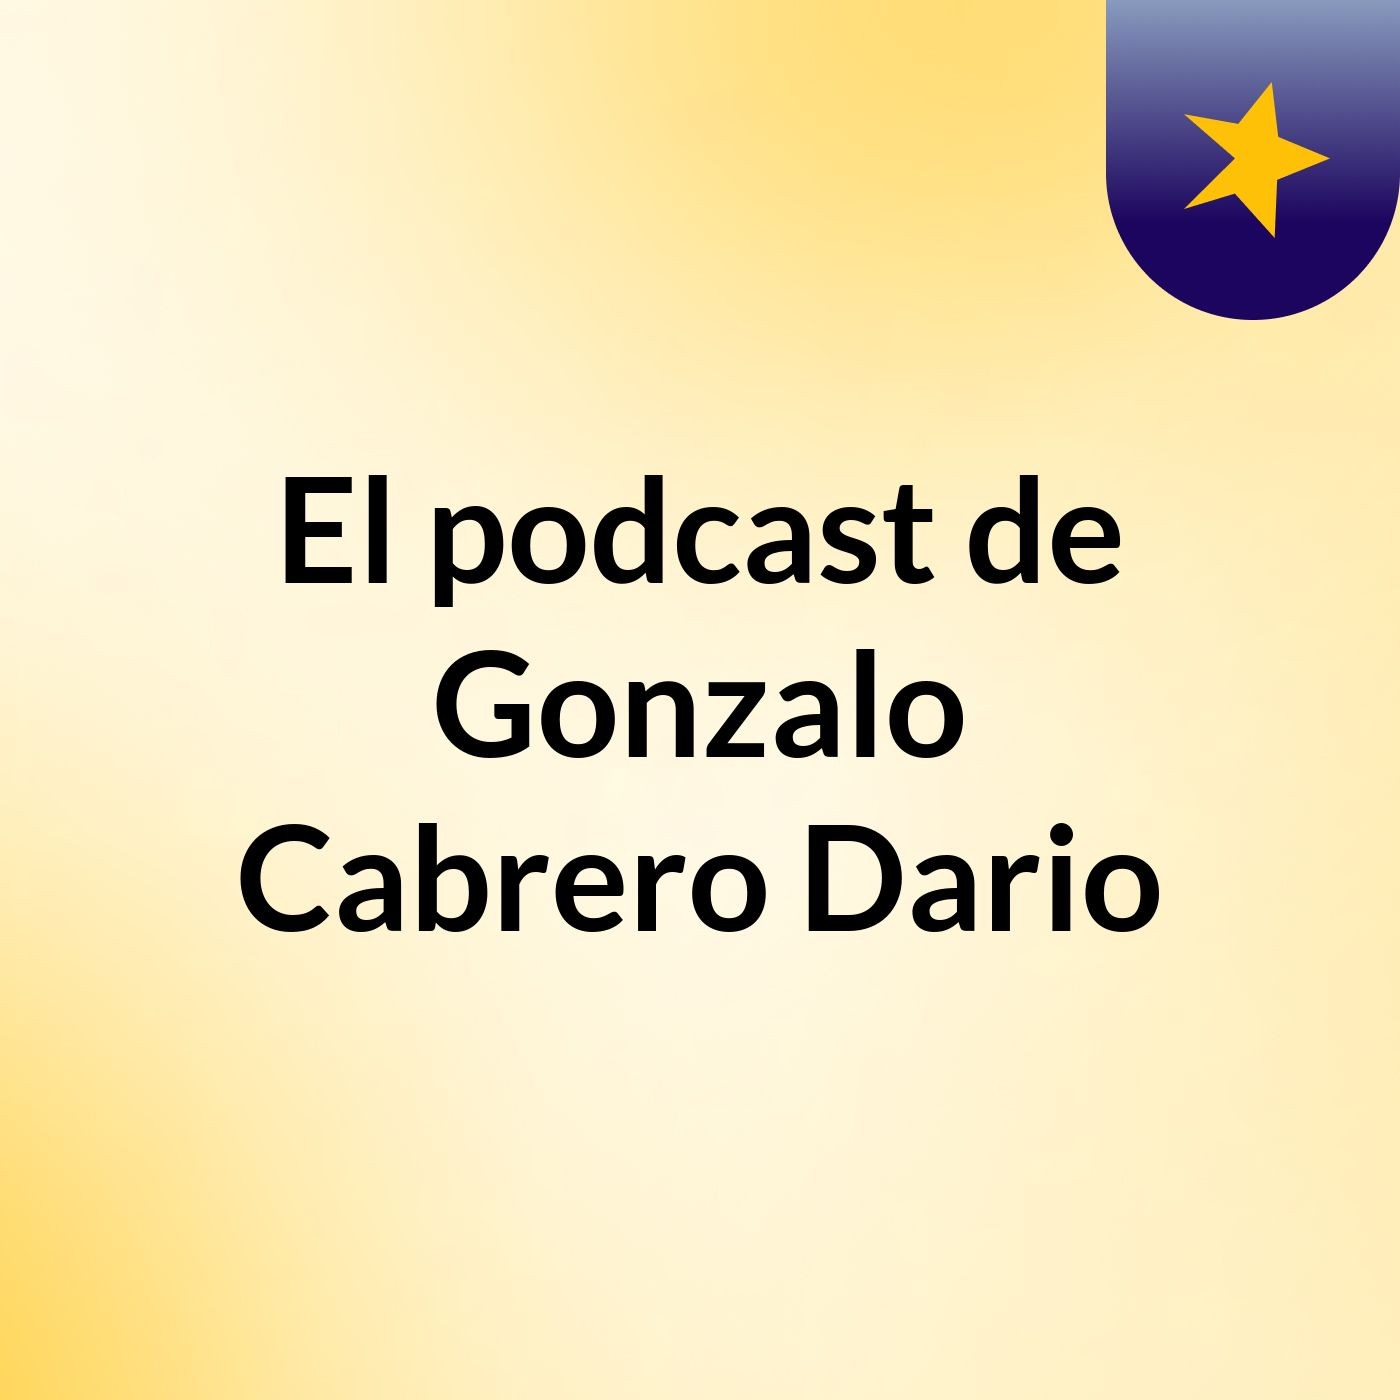 El podcast de Gonzalo Cabrero Dario